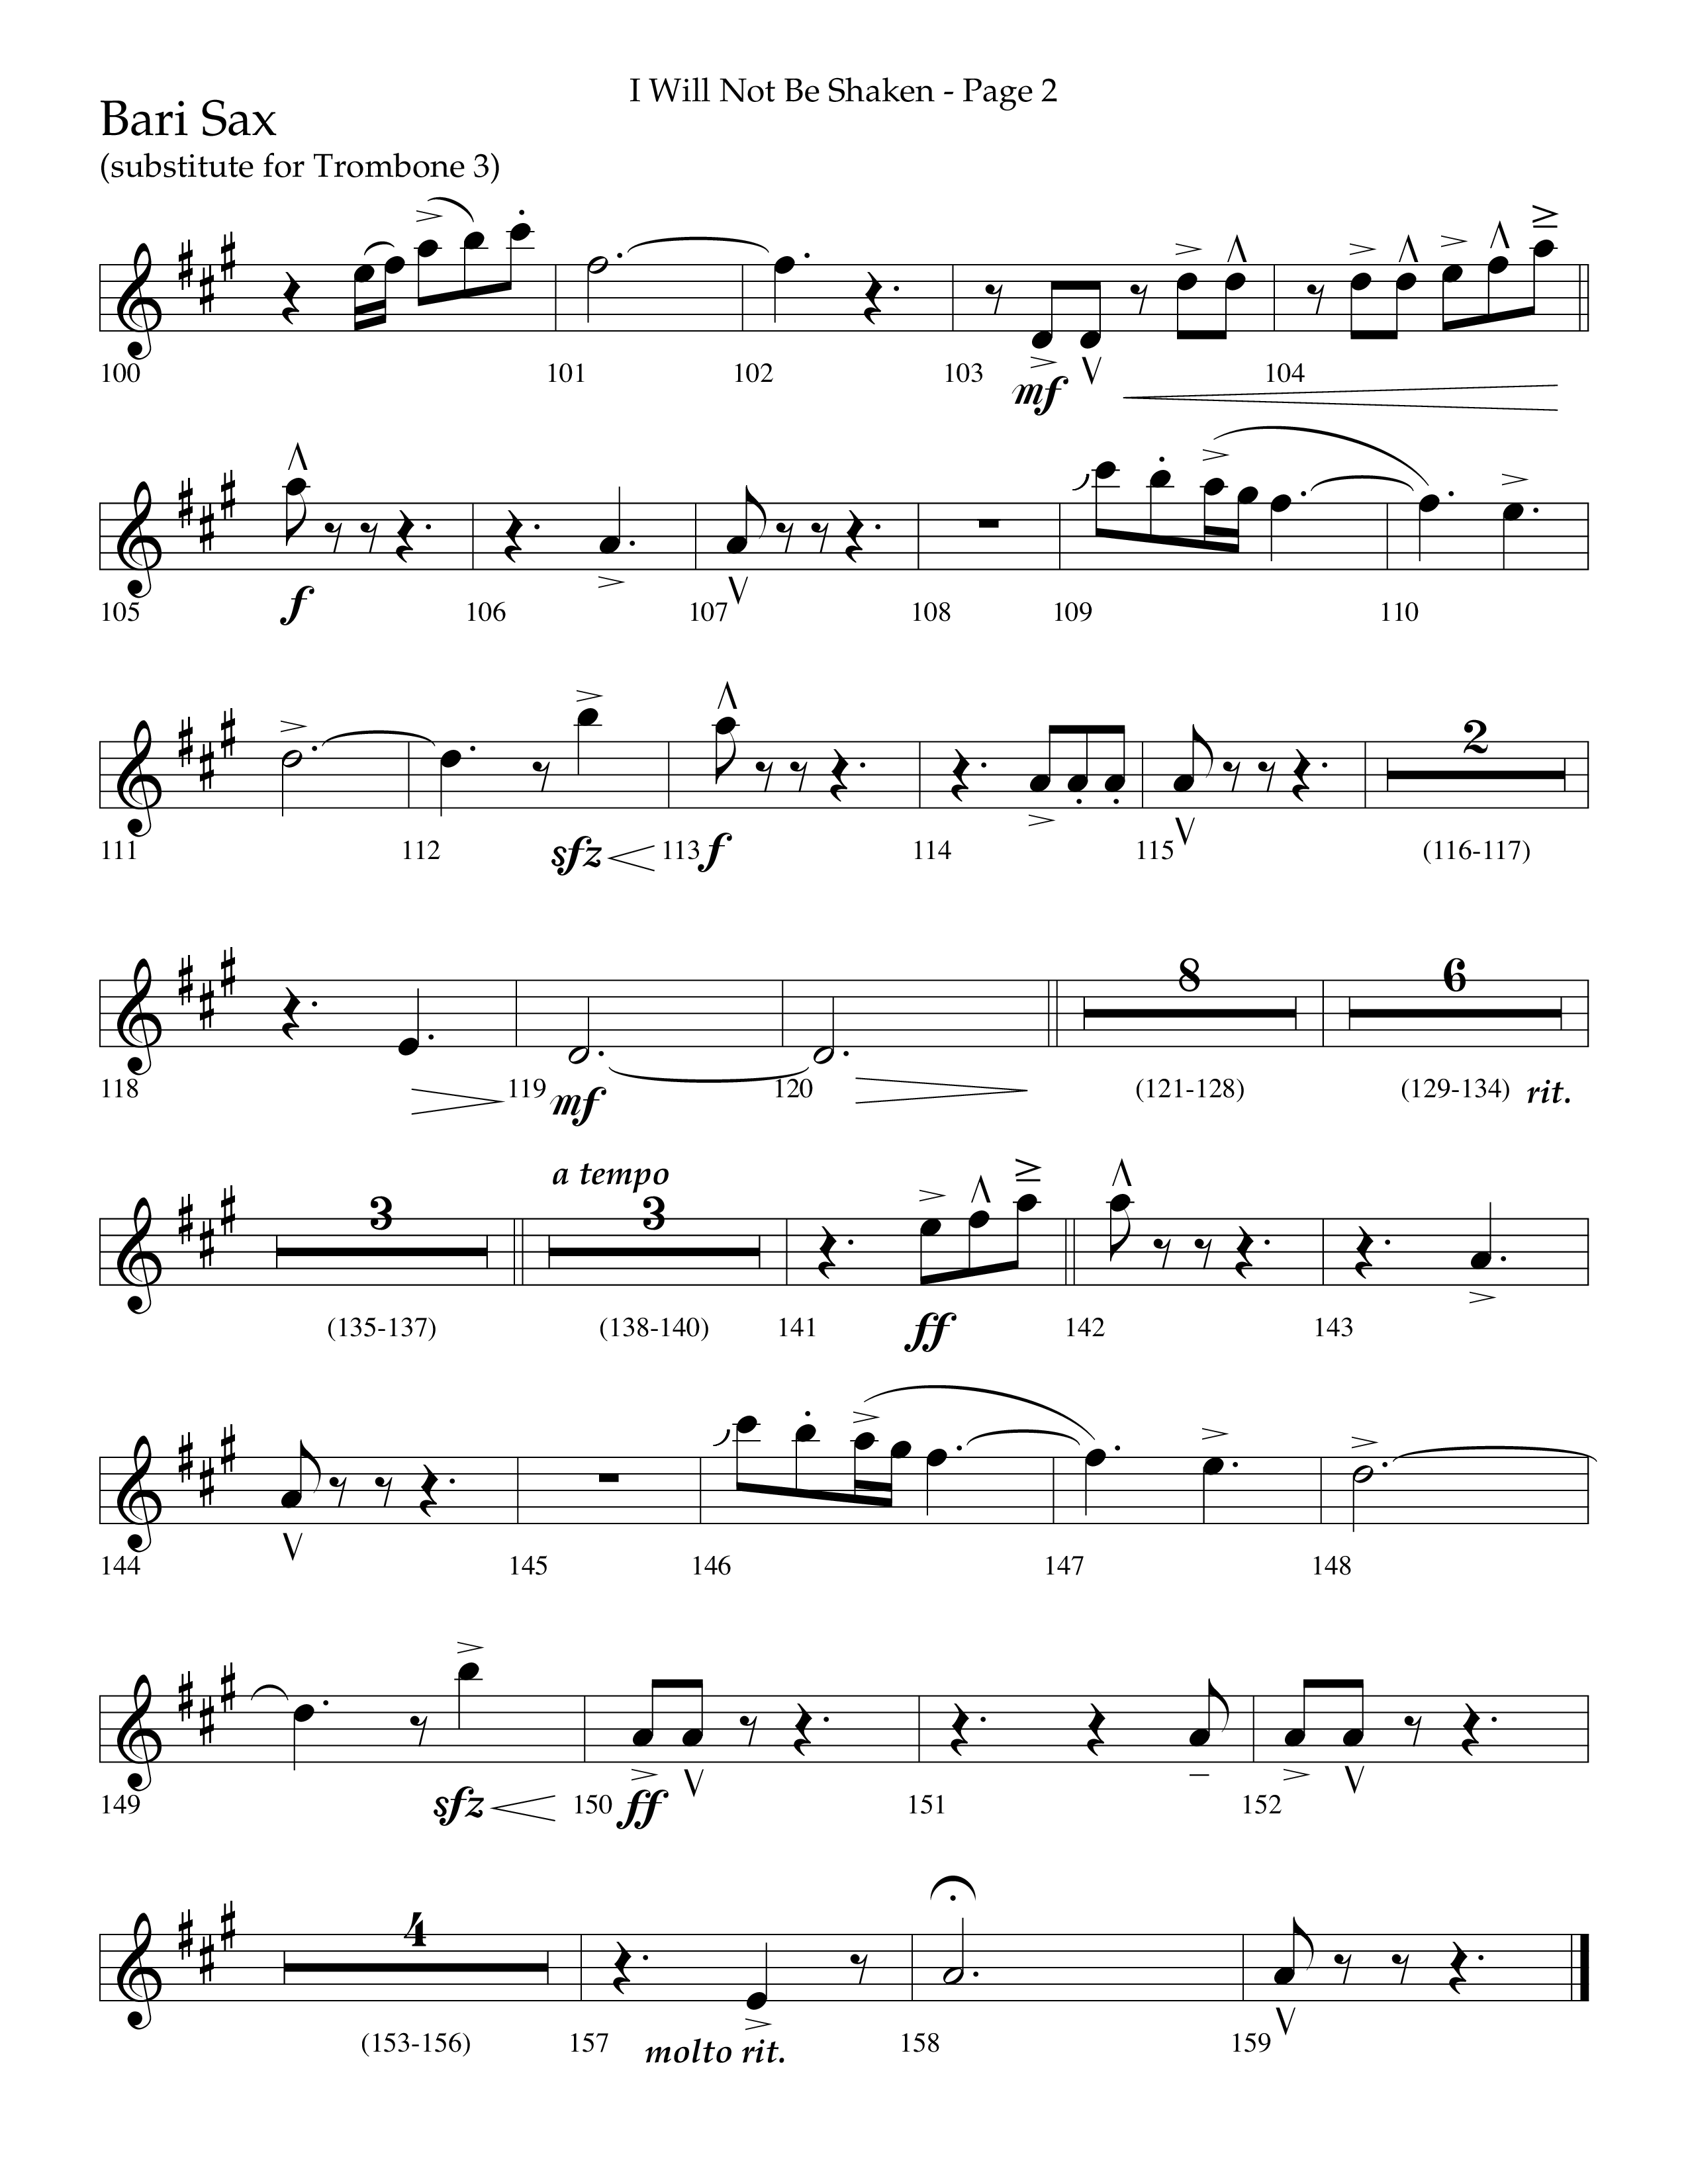 I Will Not Be Shaken (Choral Anthem SATB) Bari Sax (Lifeway Choral / Arr. Cliff Duren)